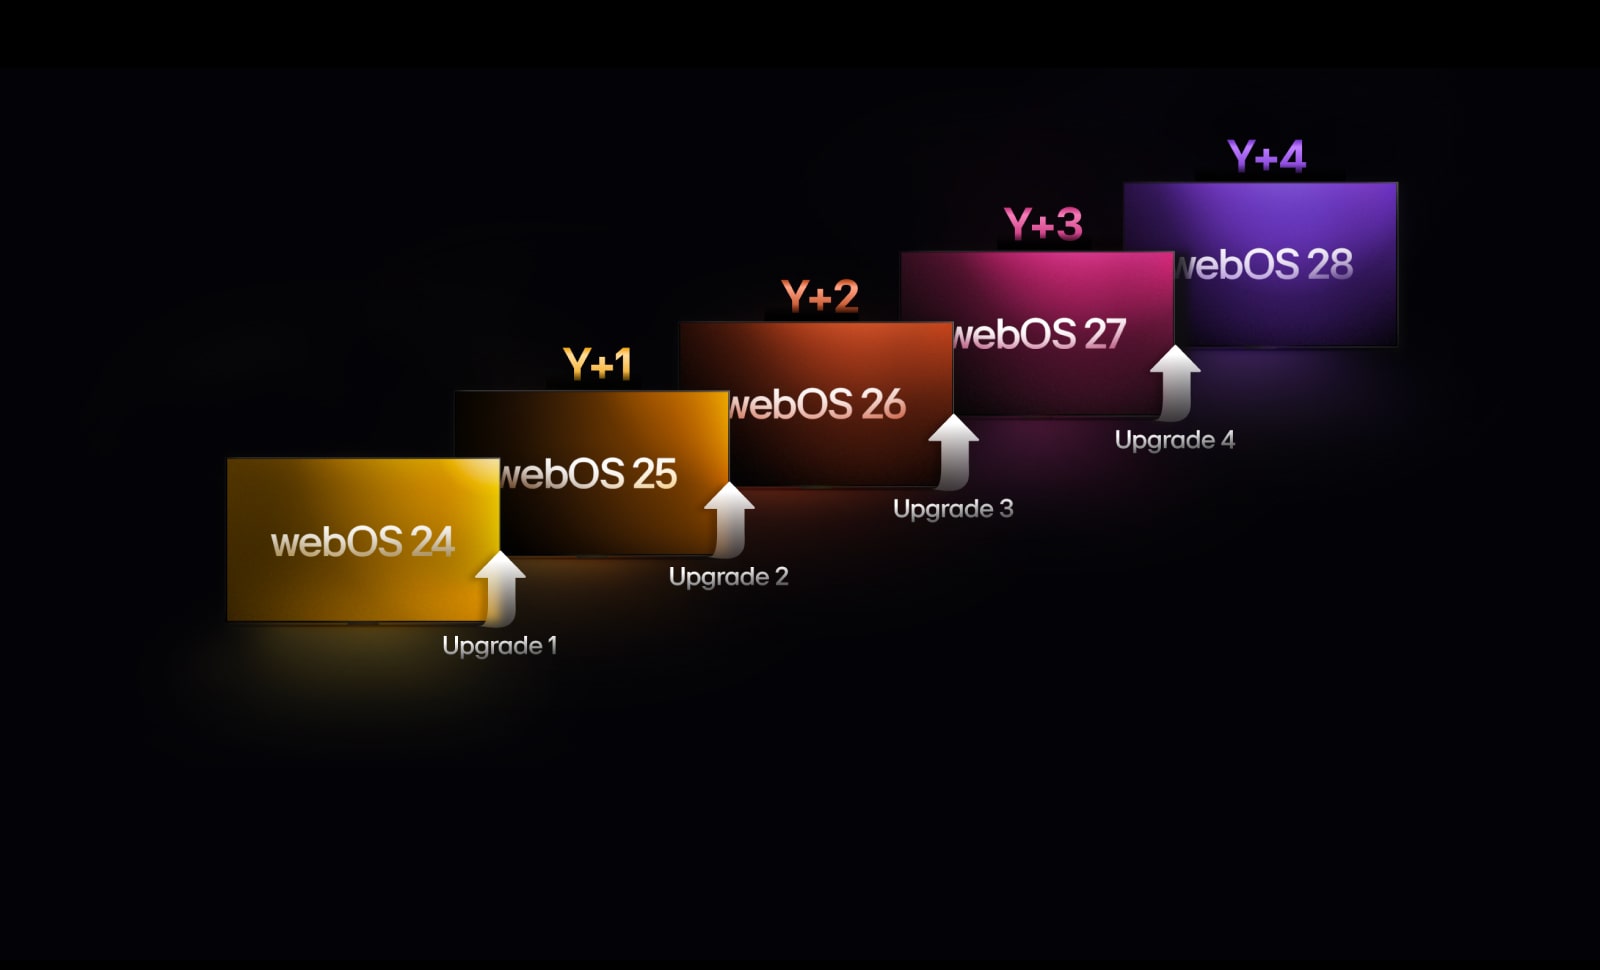 Cinq rectangles de couleurs différentes sont échelonnés vers le haut, chacun étiquetés avec une année de « webOS 24 » à « webOS 28 ». Des flèches pointent vers le haut entre les rectangles, étiquetées de « Mise à jour 1 » à « Mise à jour 4 ».